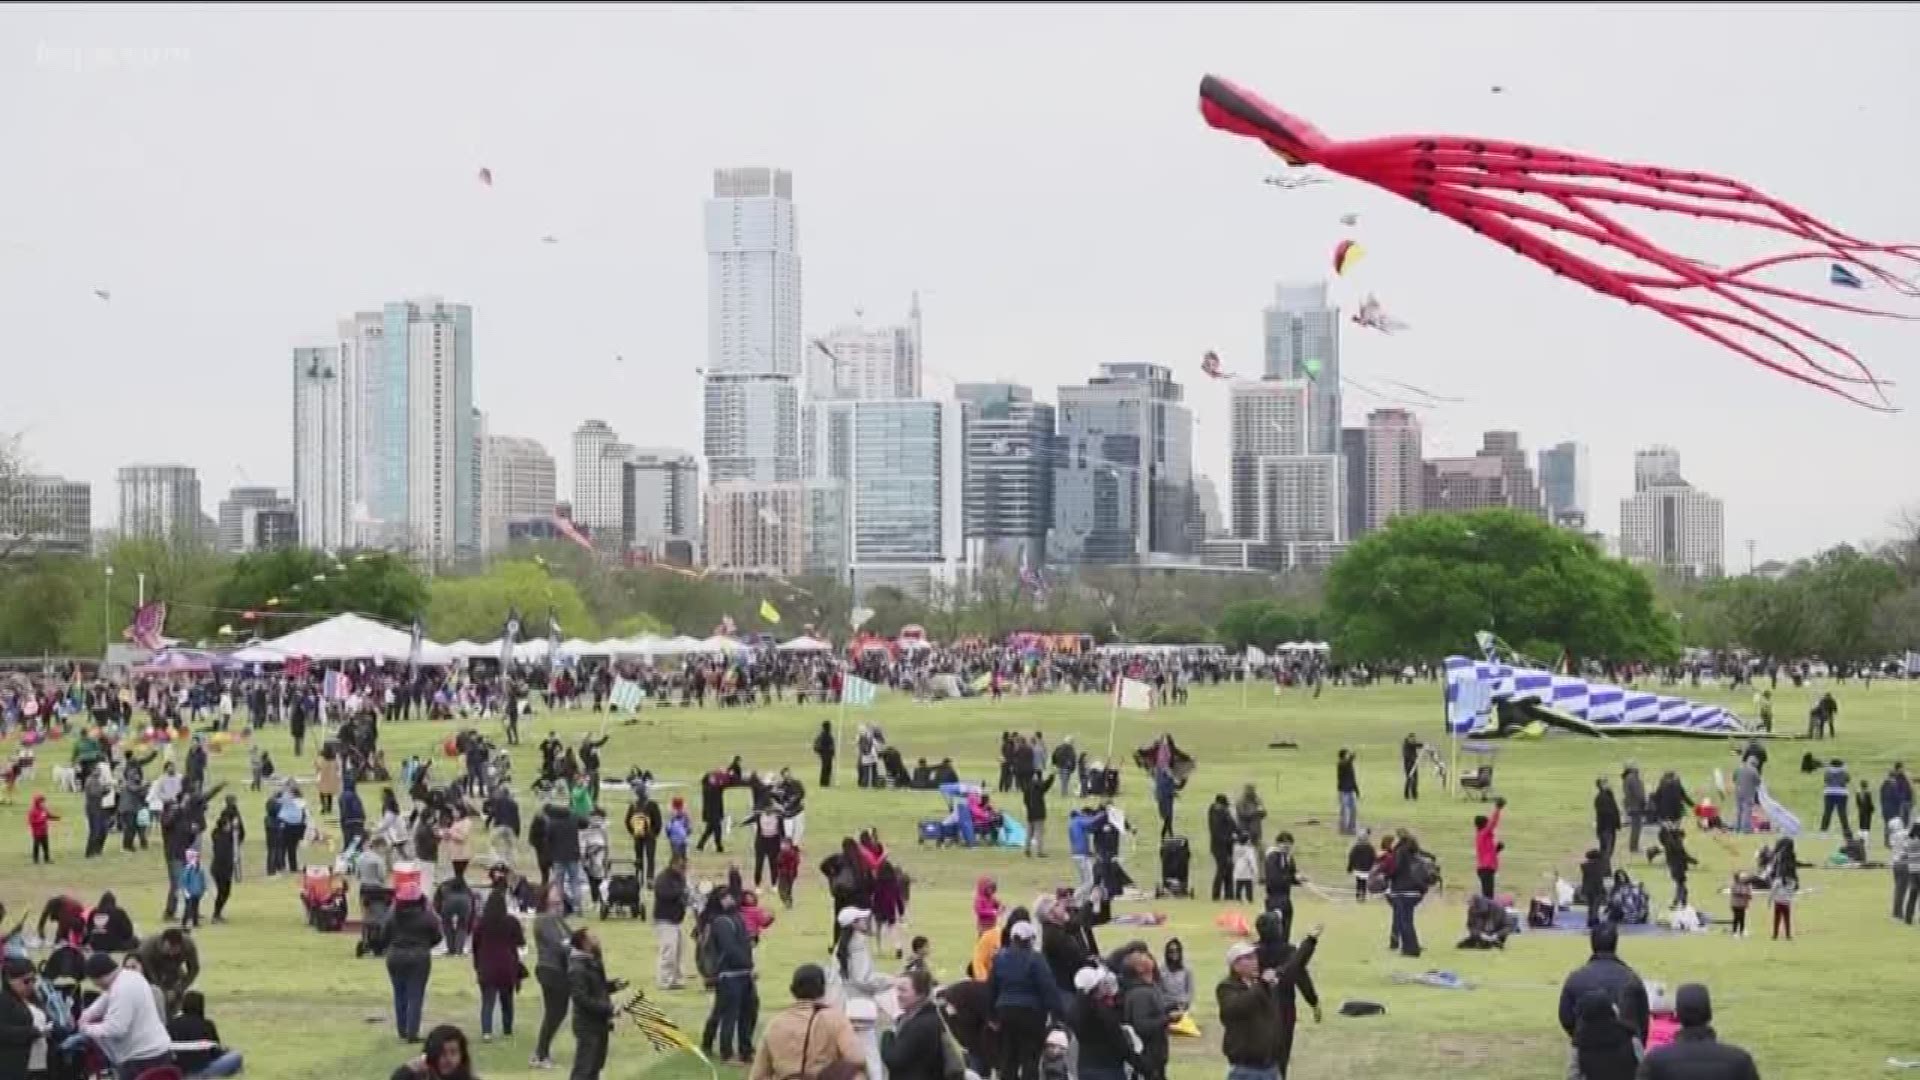 cedar park kite festival